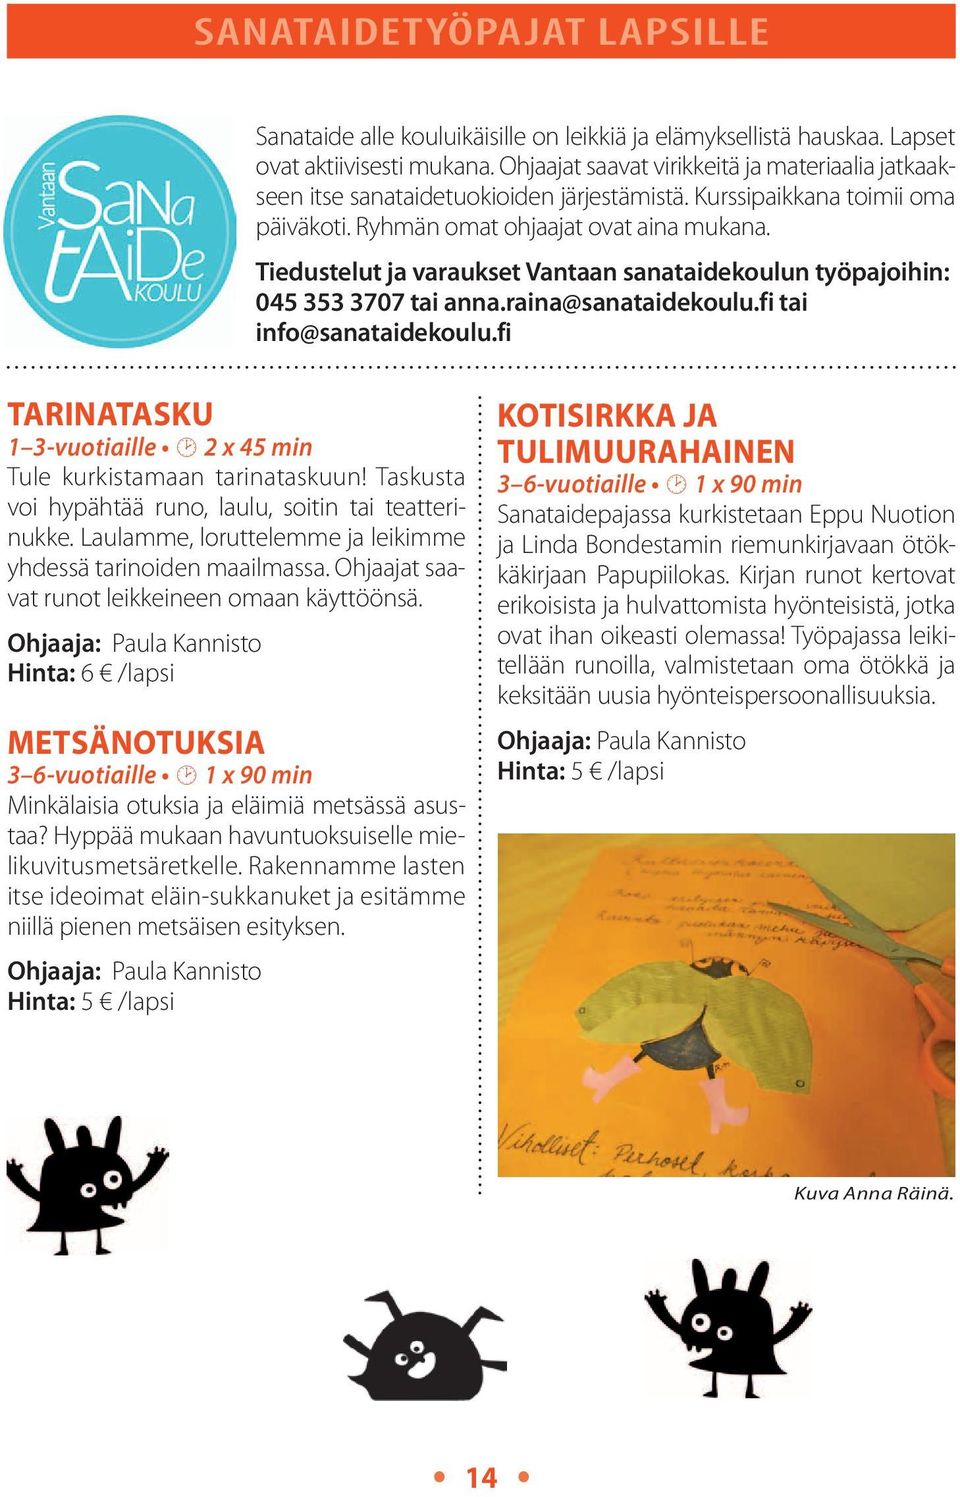 Tiedustelut ja varaukset Vantaan sanataidekoulun työpajoihin: 045 353 3707 tai anna.raina@sanataidekoulu.fi tai info@sanataidekoulu.